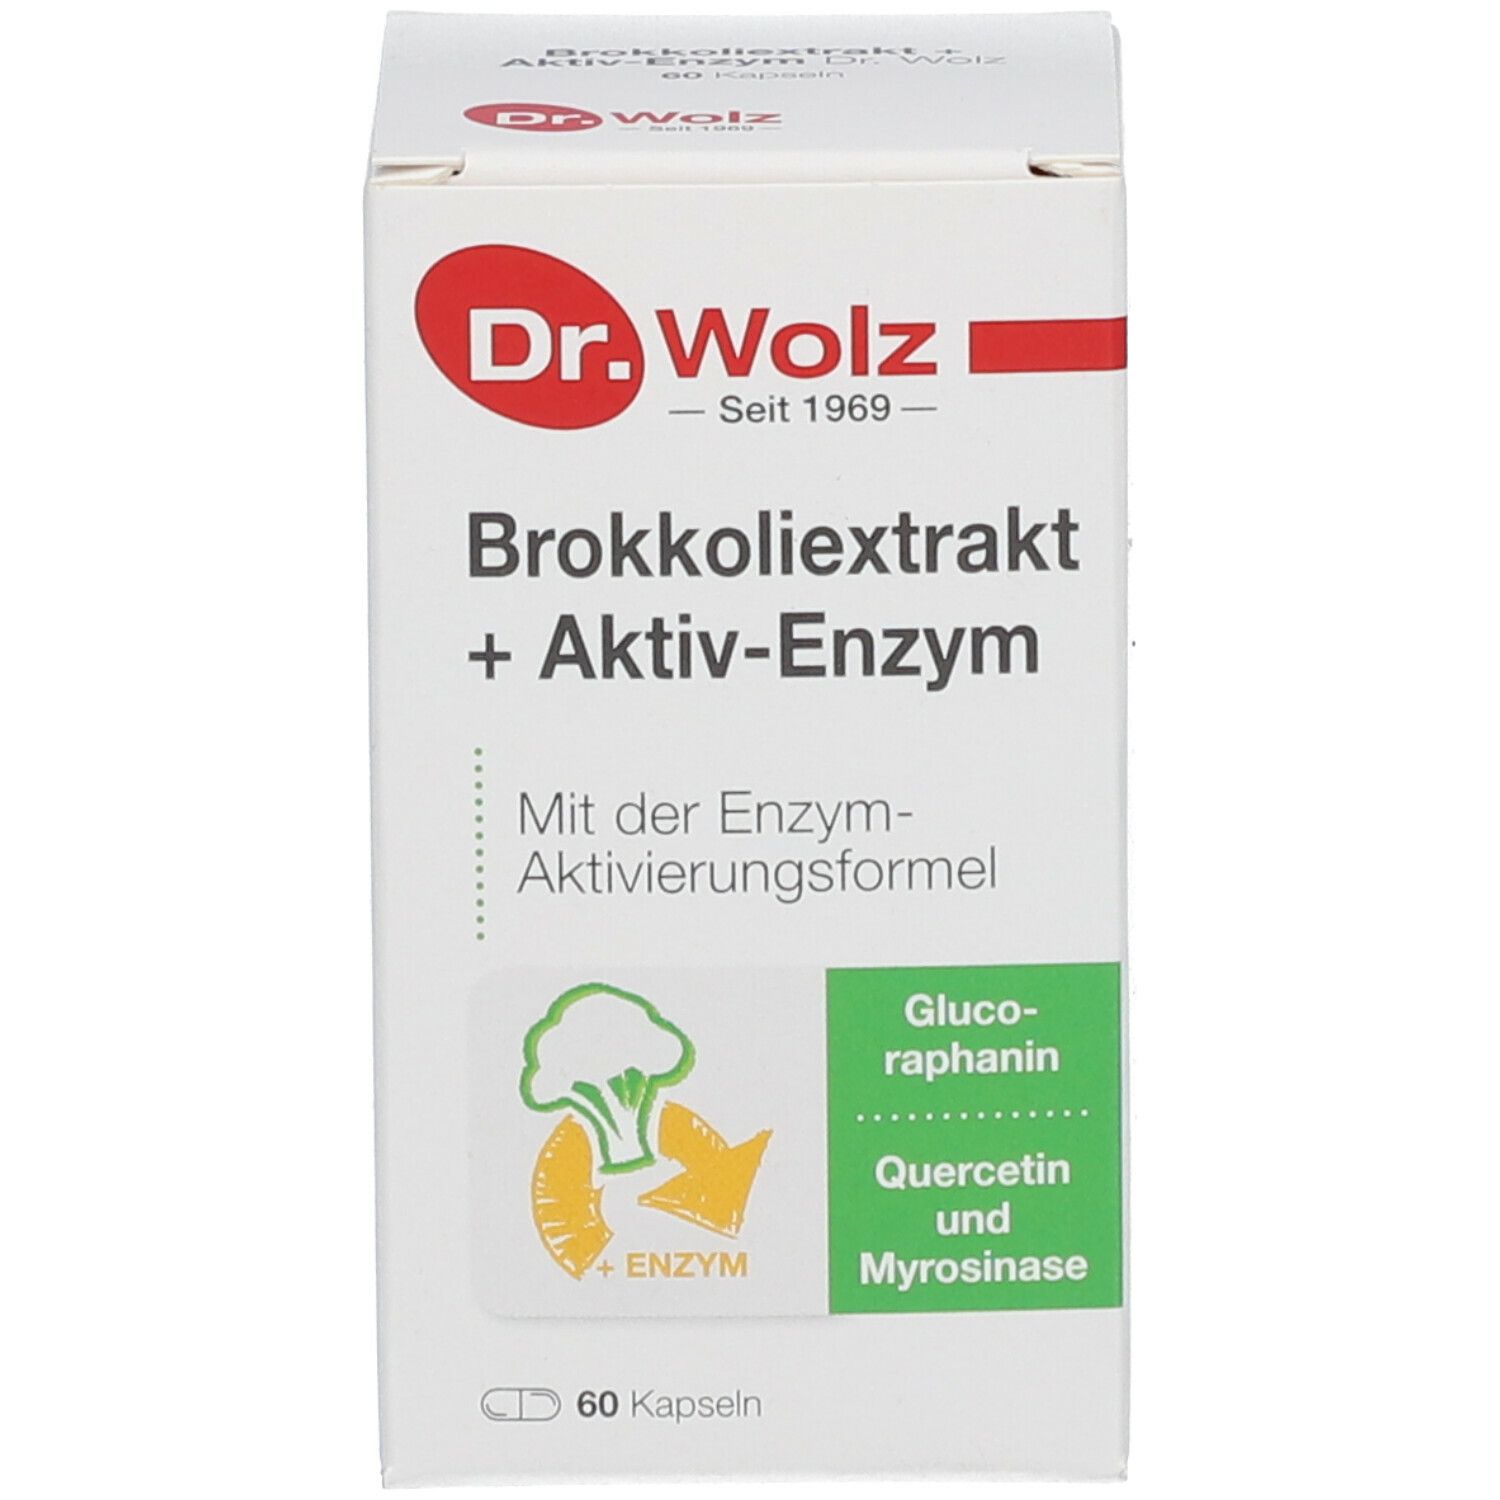 Dr. Wolz Brokkoliextrakt + Aktiv-Enzym Dr. Wolz